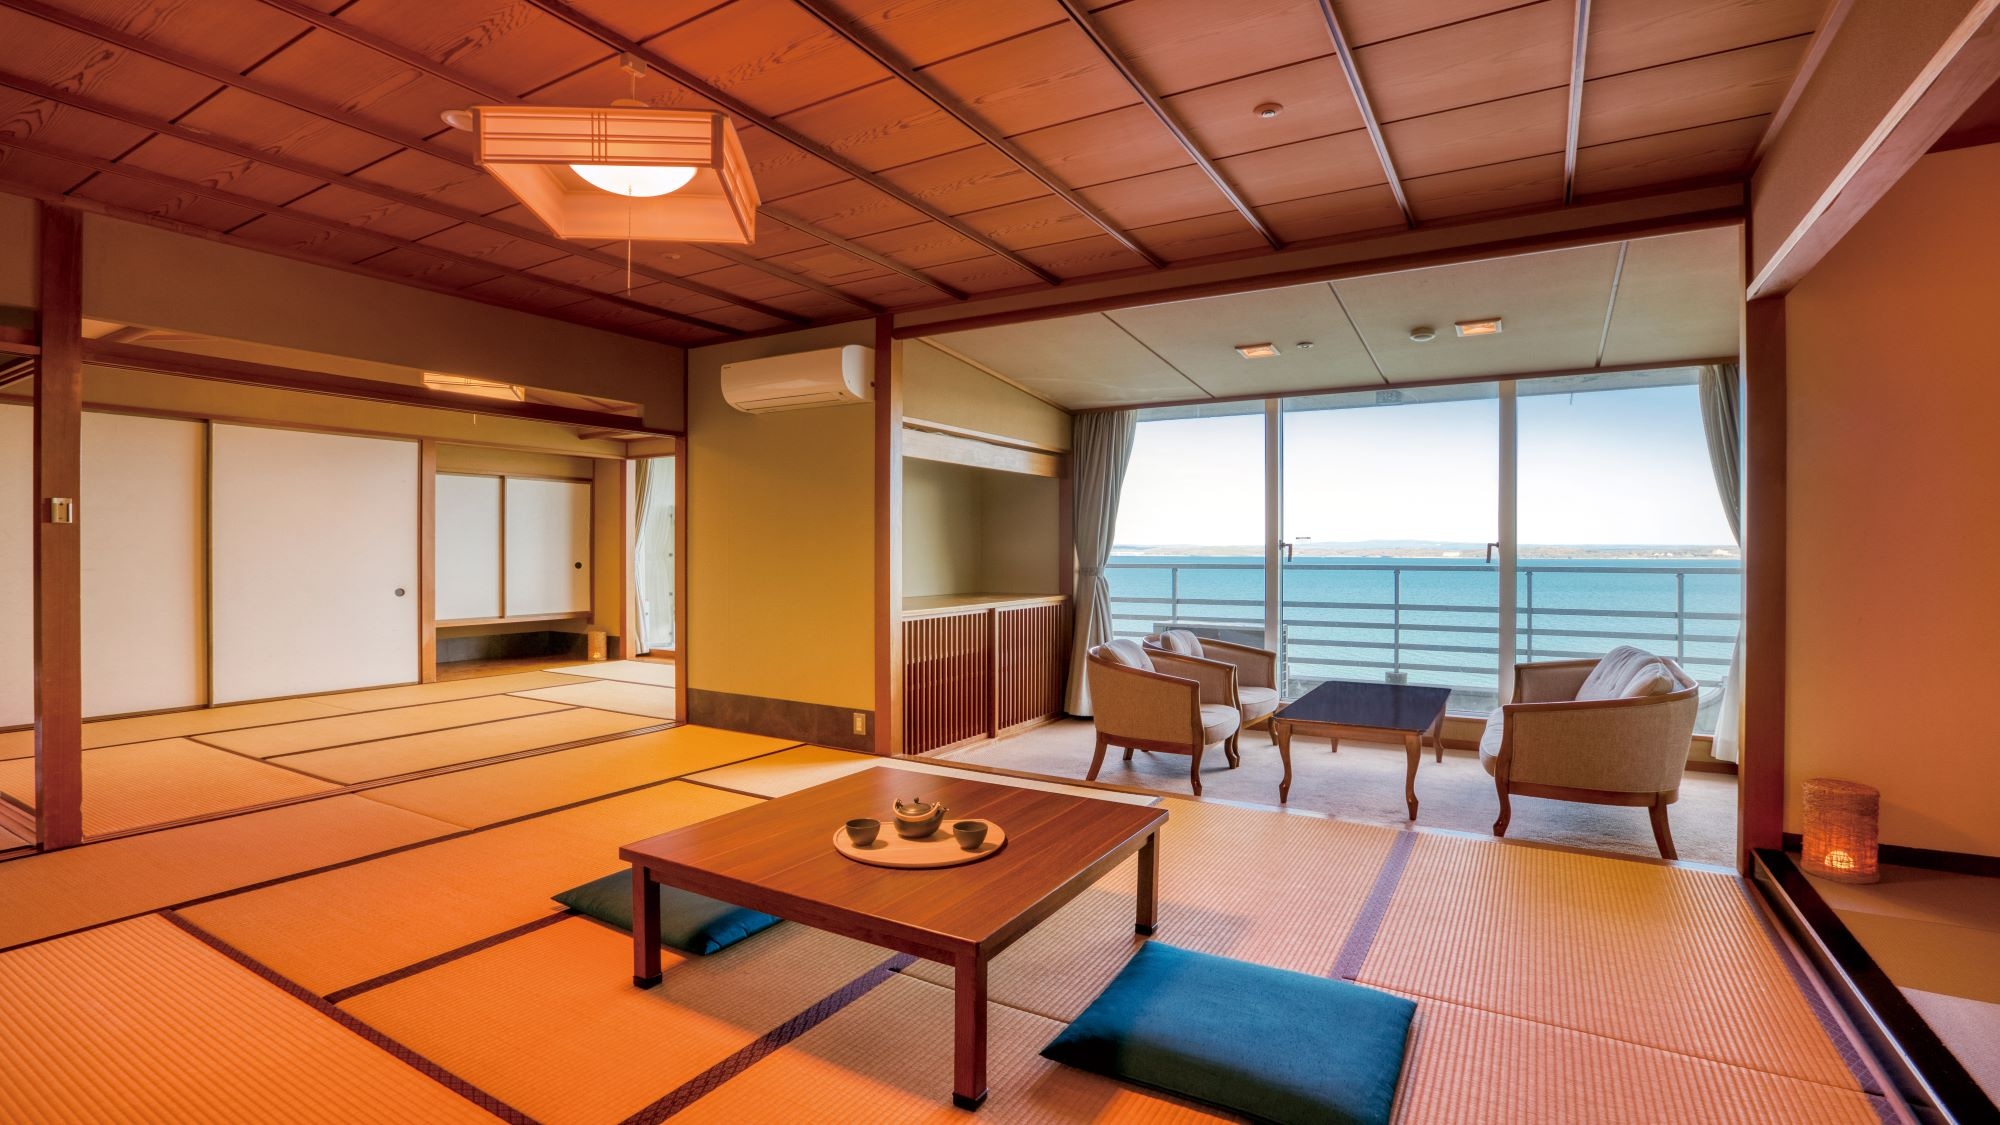 Junior Suite ห้องสไตล์ญี่ปุ่น 2 ห้อง * ตัวอย่างห้องพัก